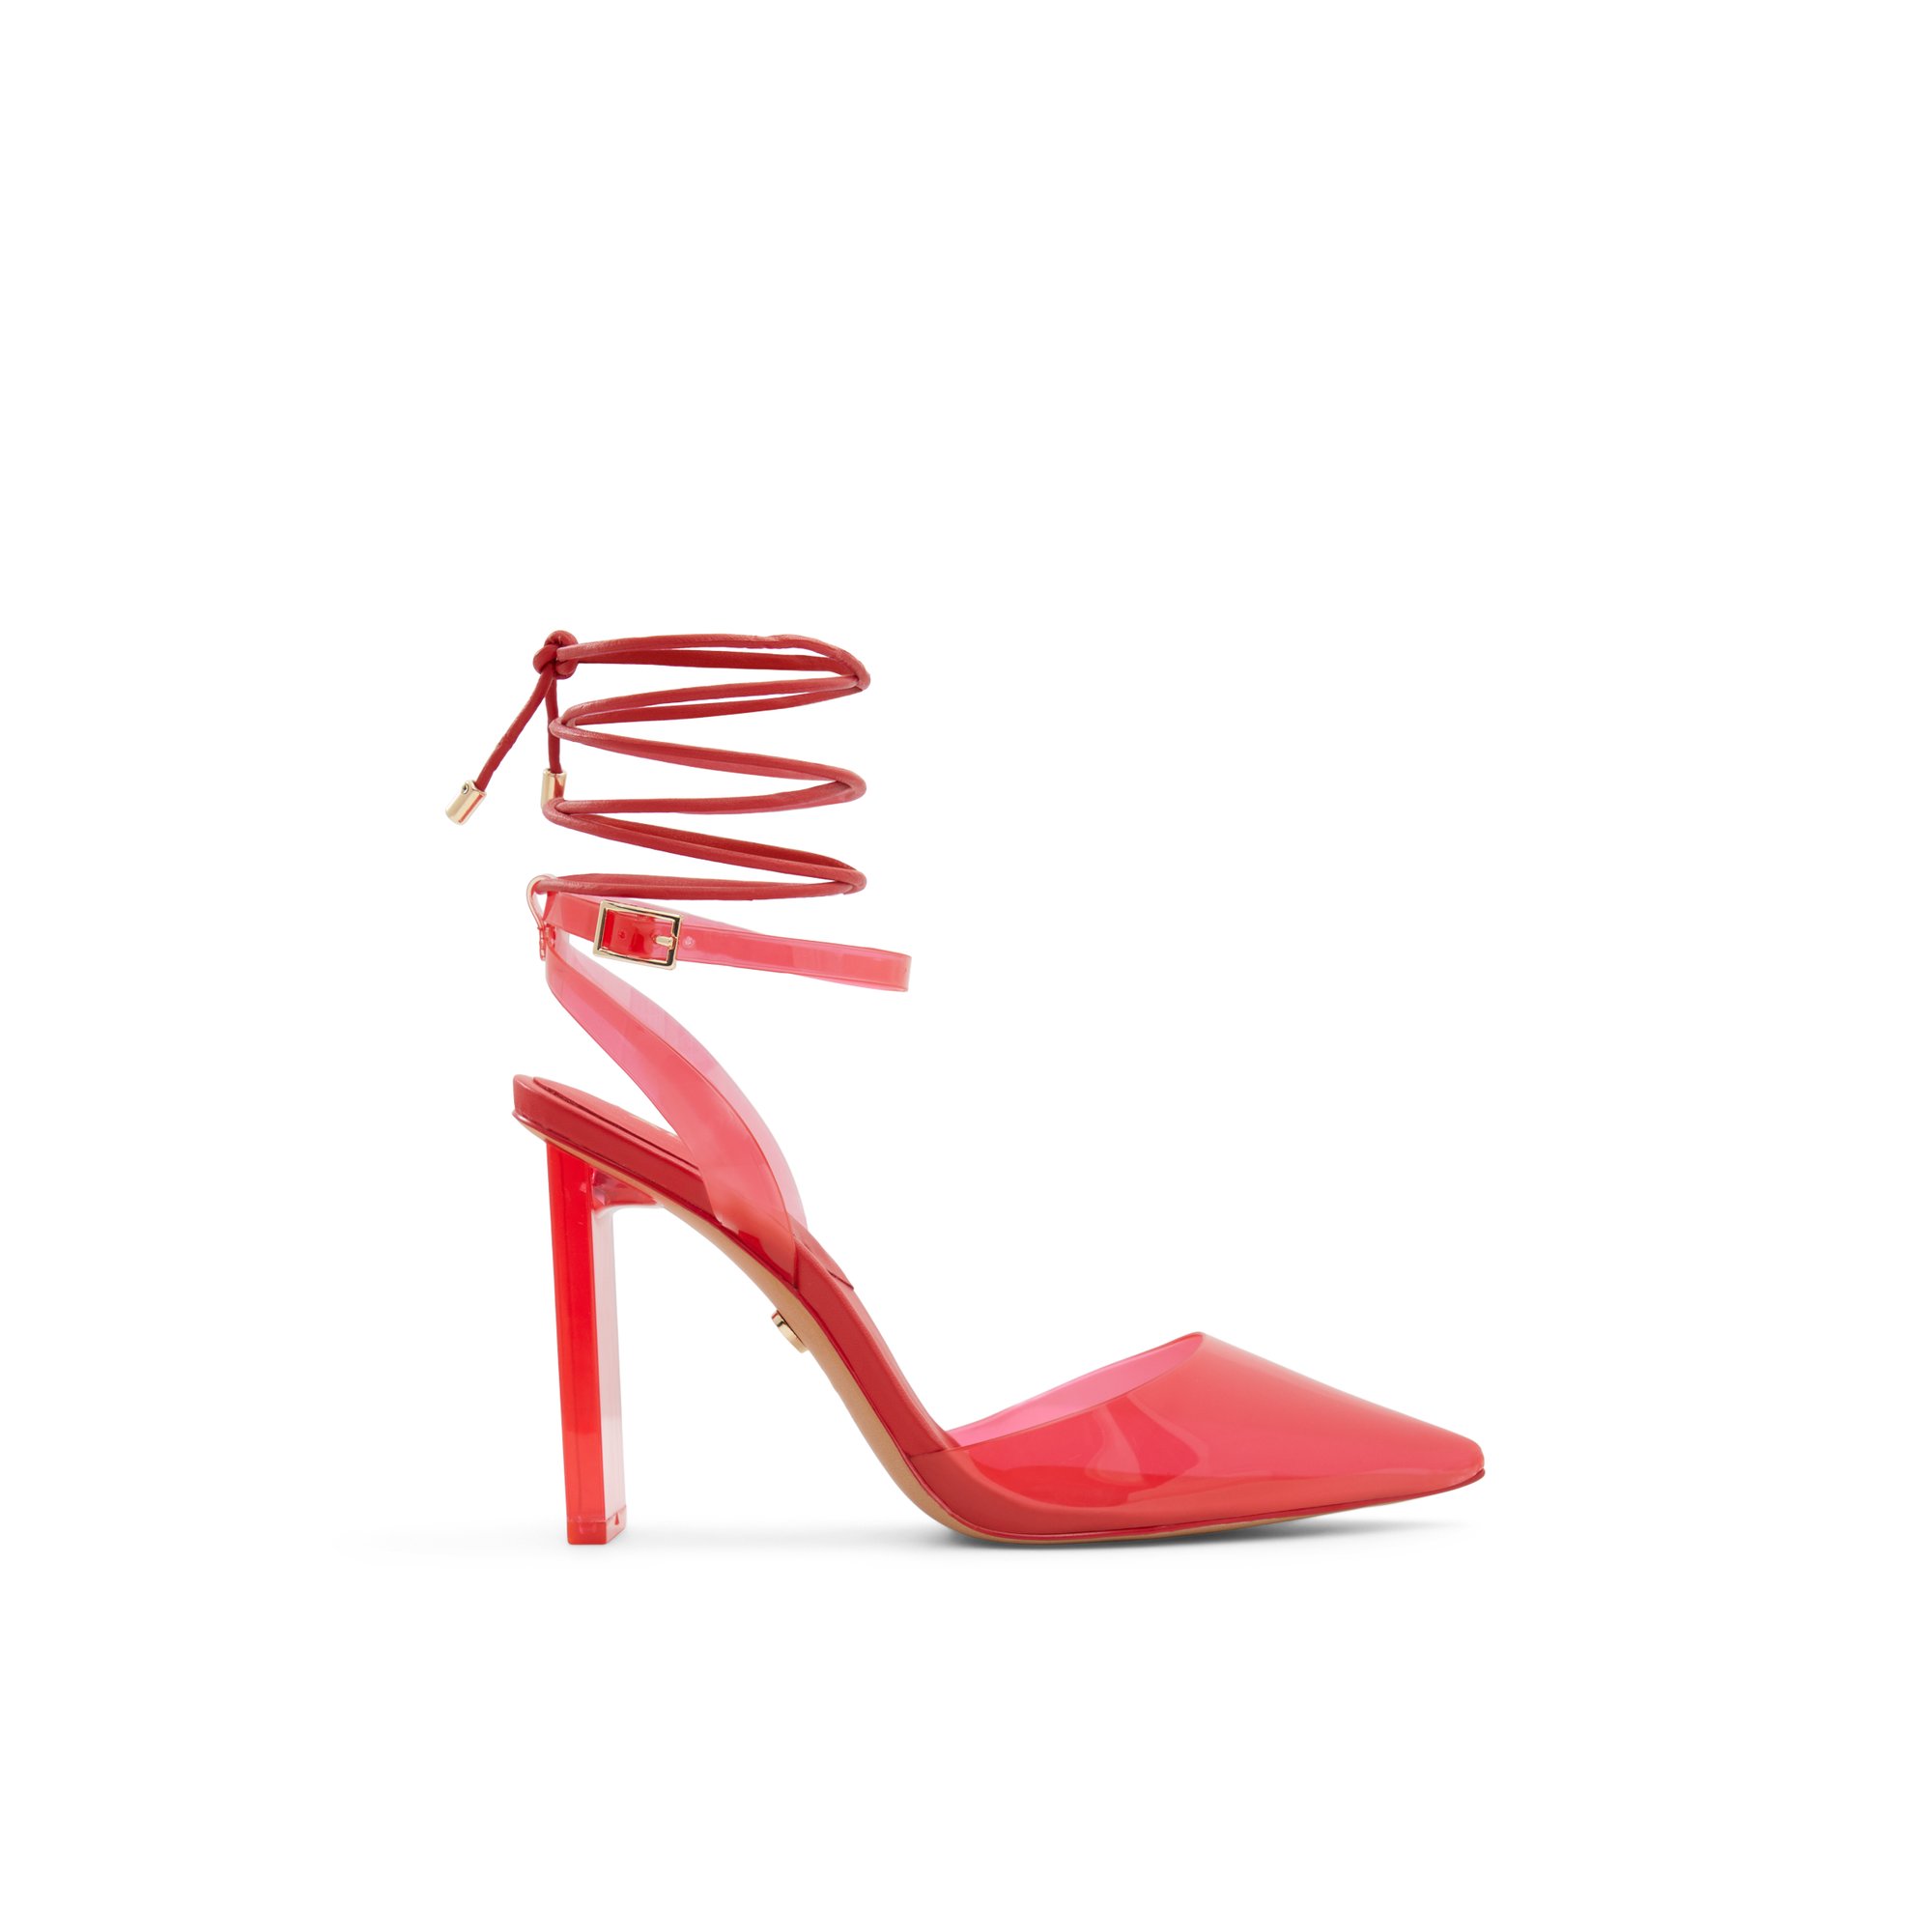 ALDO Delfina For Women - Red